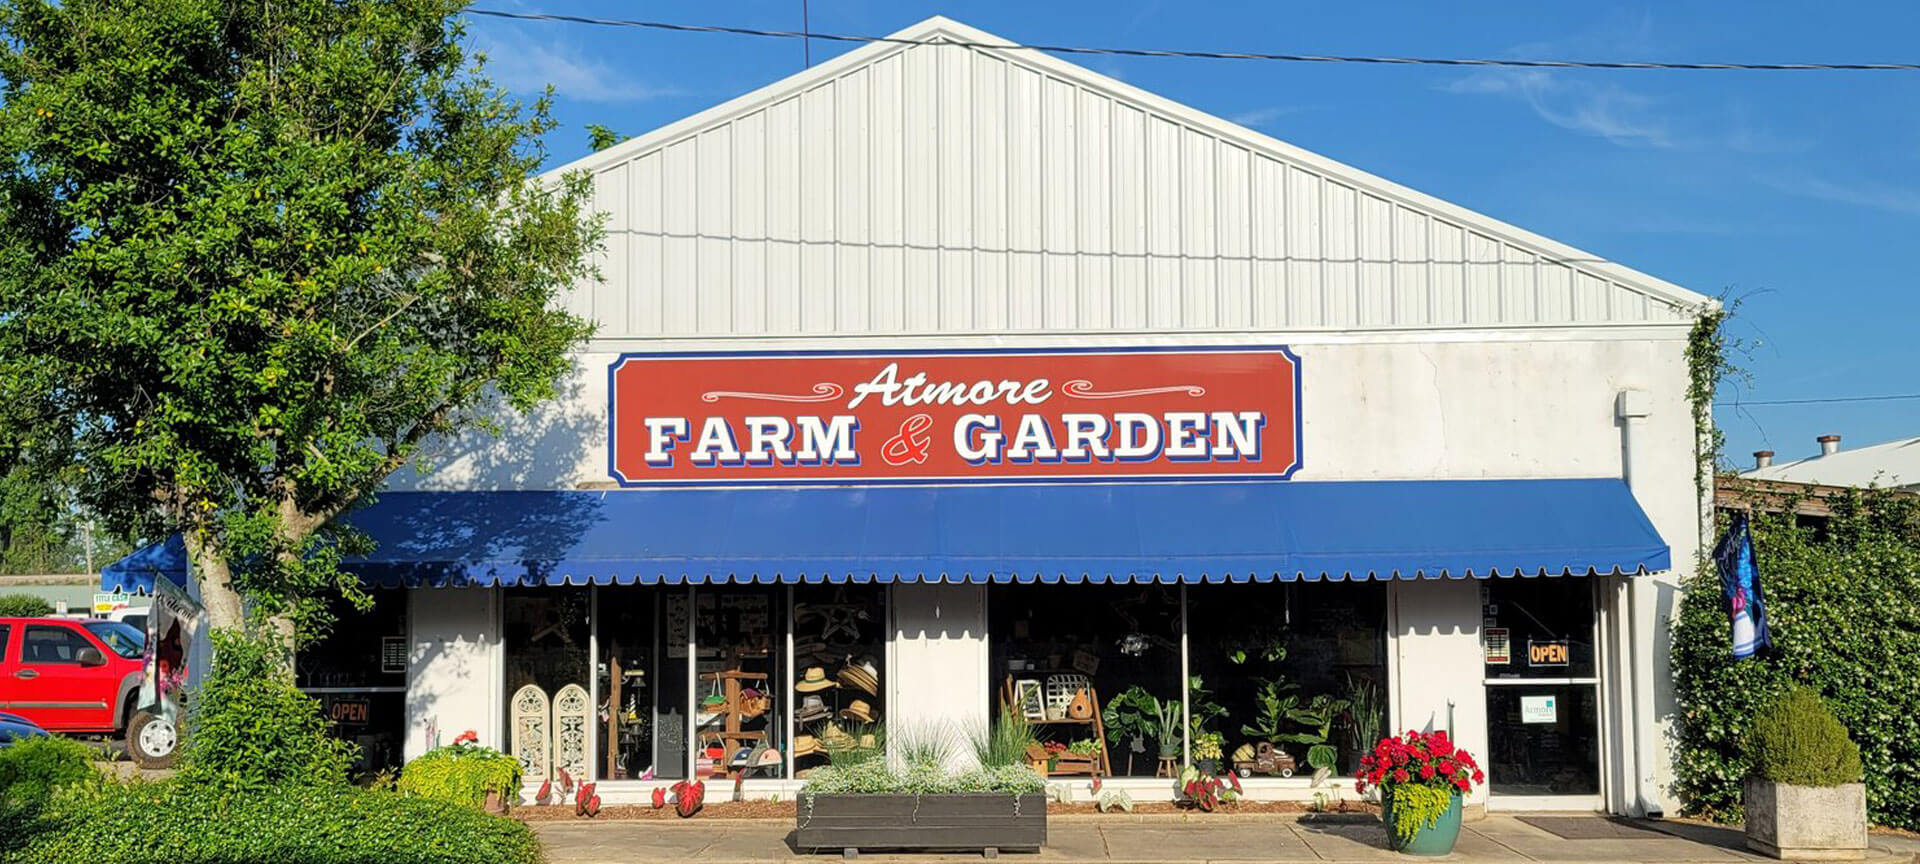 Atmore Farm & Garden Sign